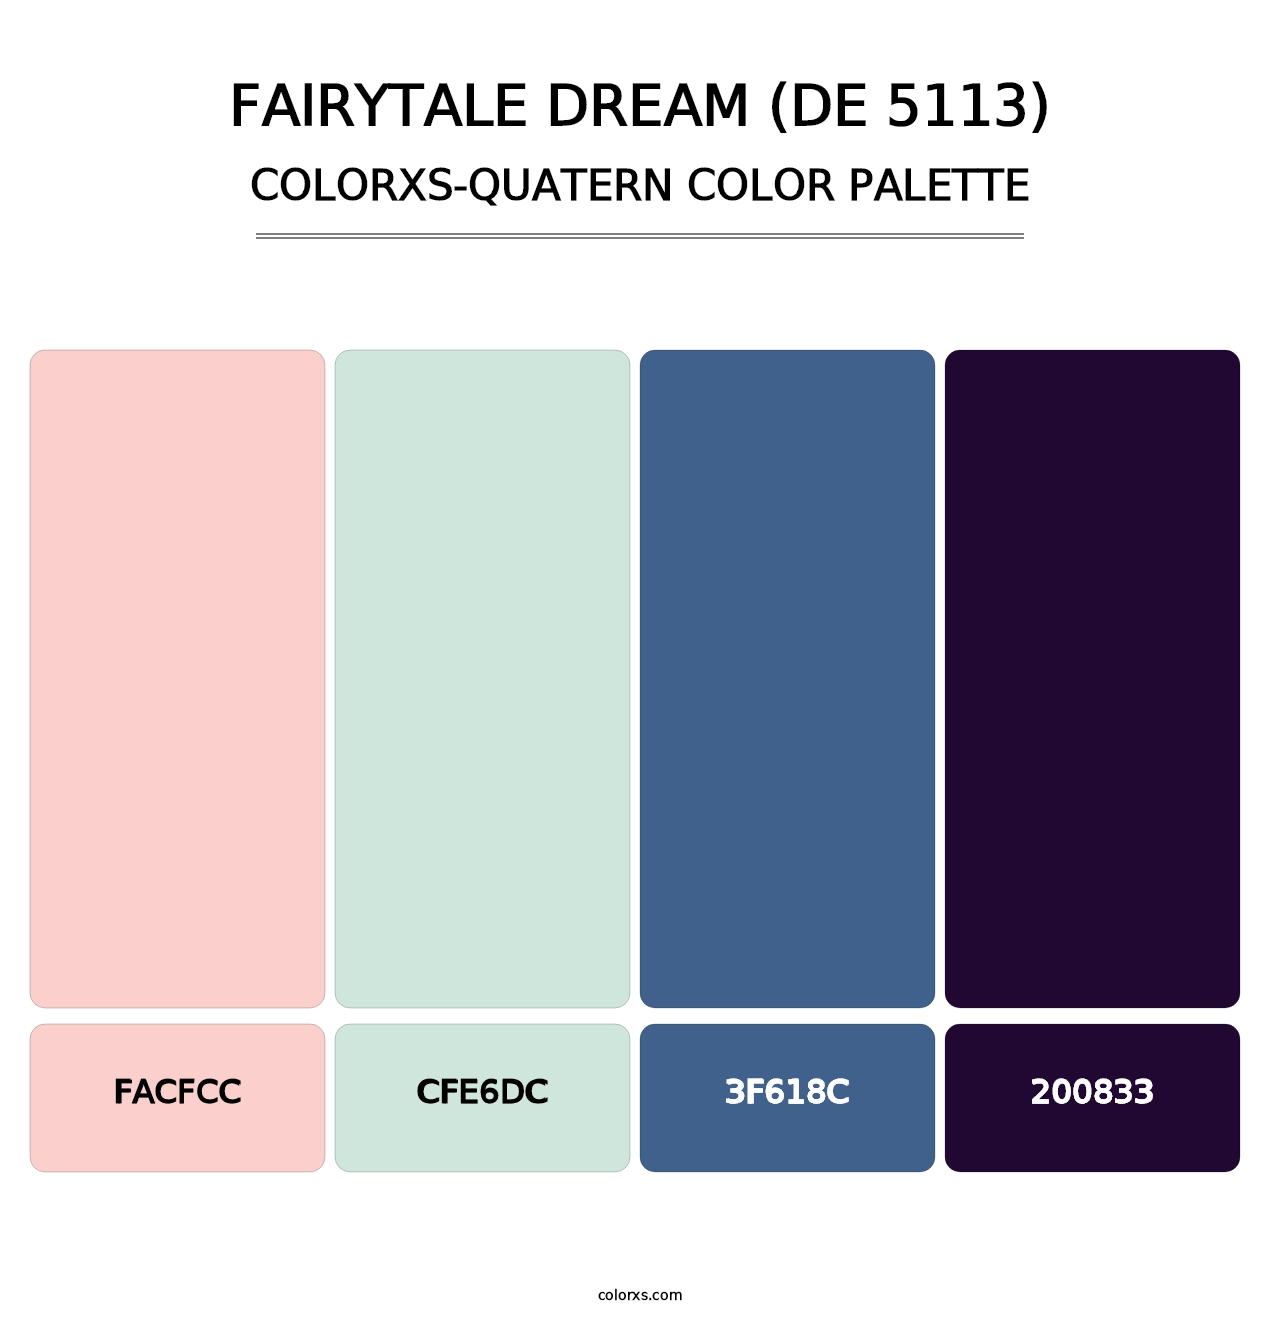 Fairytale Dream (DE 5113) - Colorxs Quatern Palette